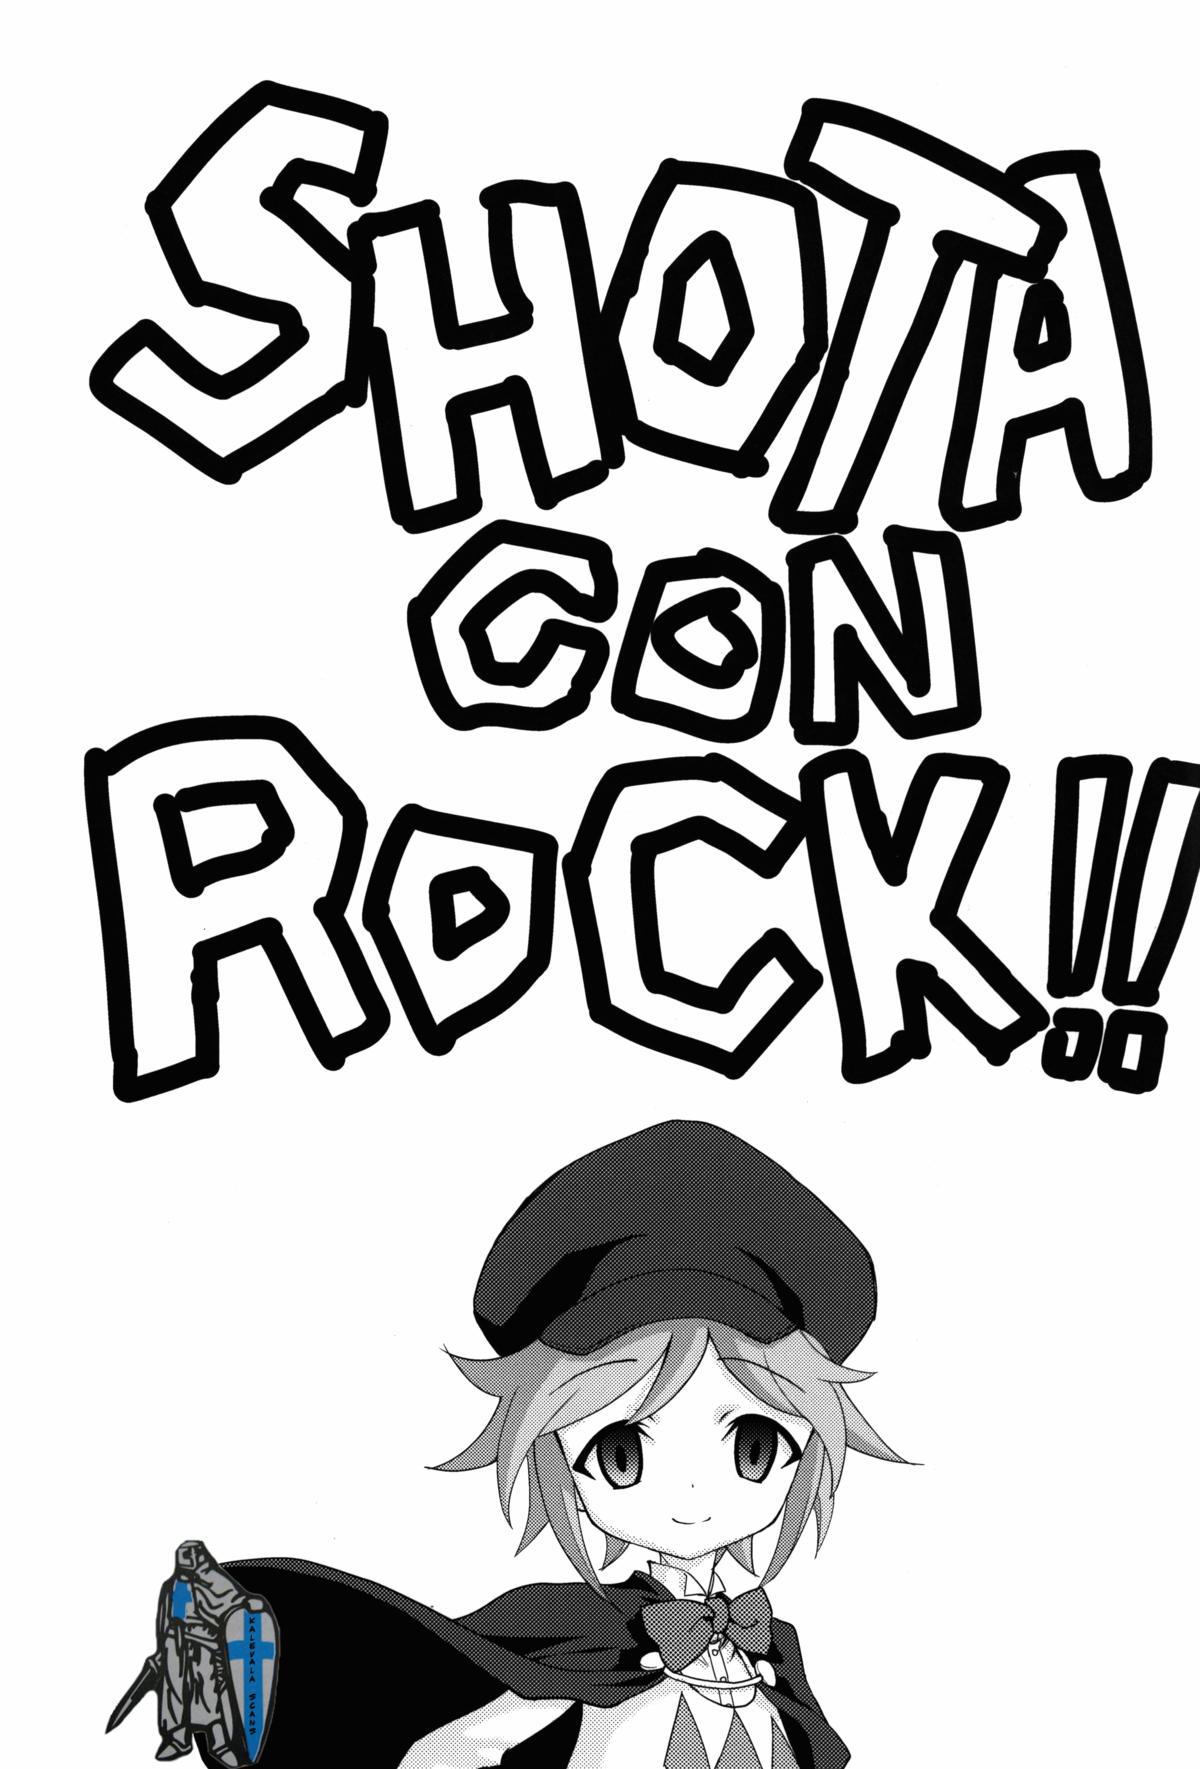 SHOTA CON Rock!! 2